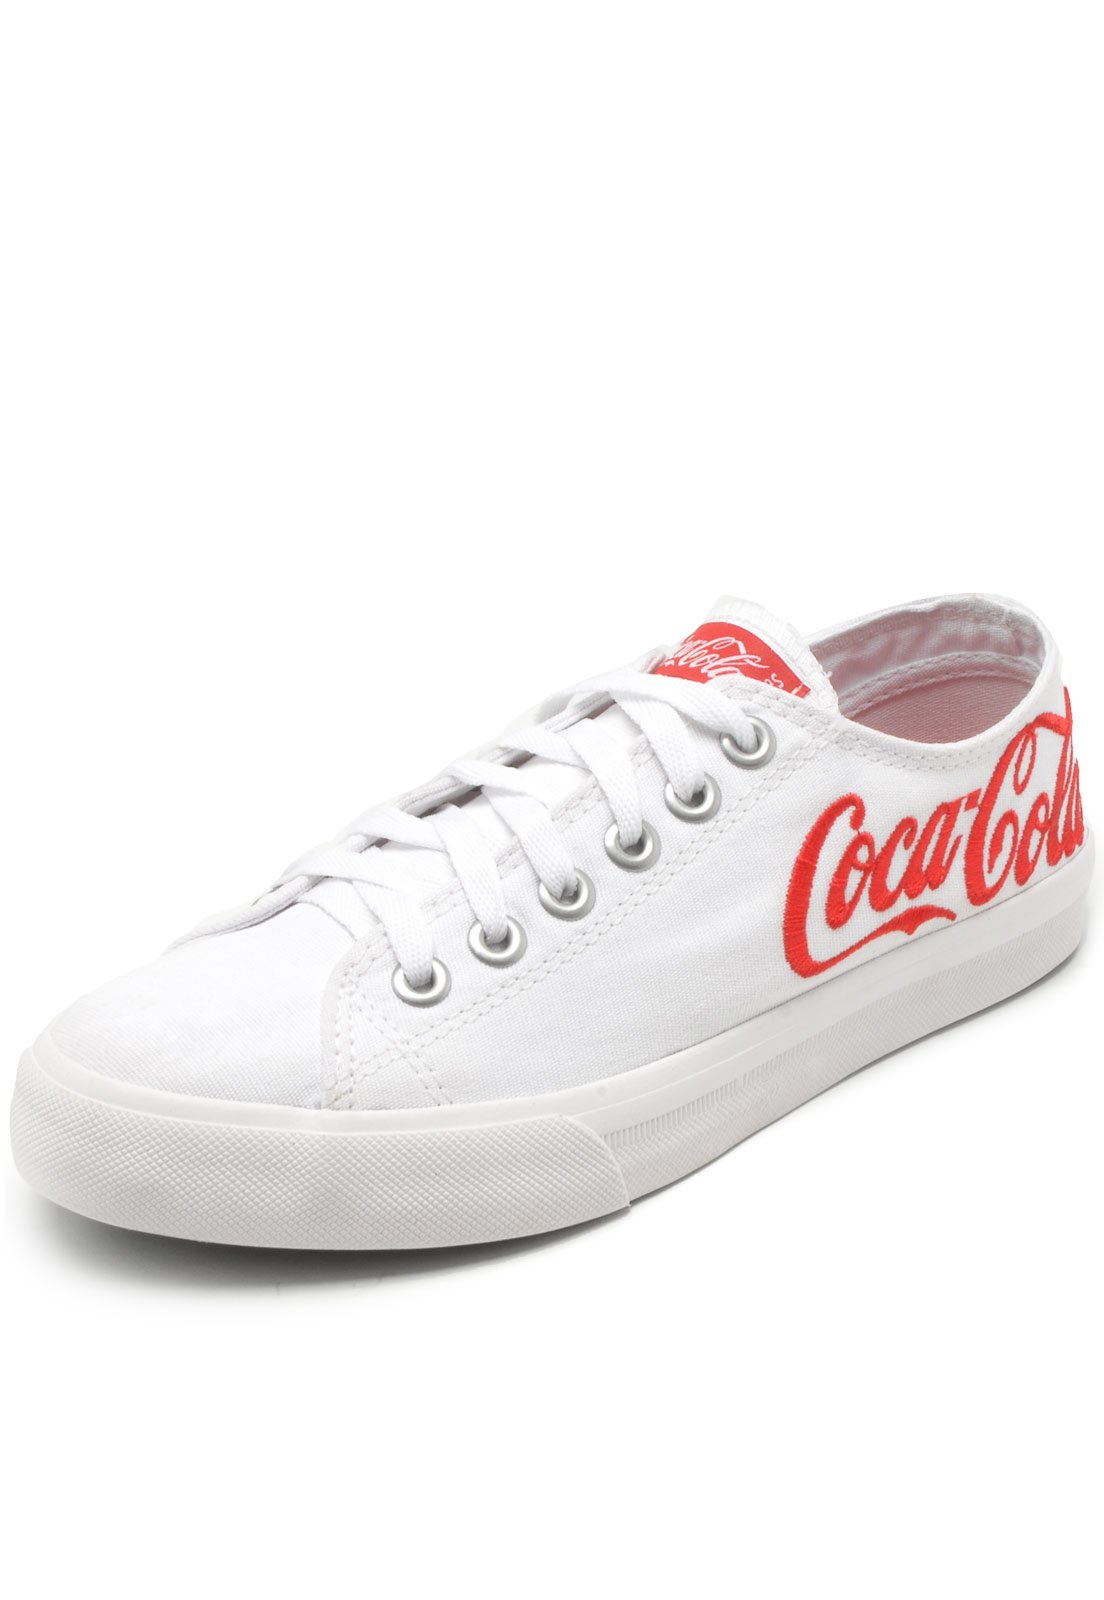 coca cola shoes branco